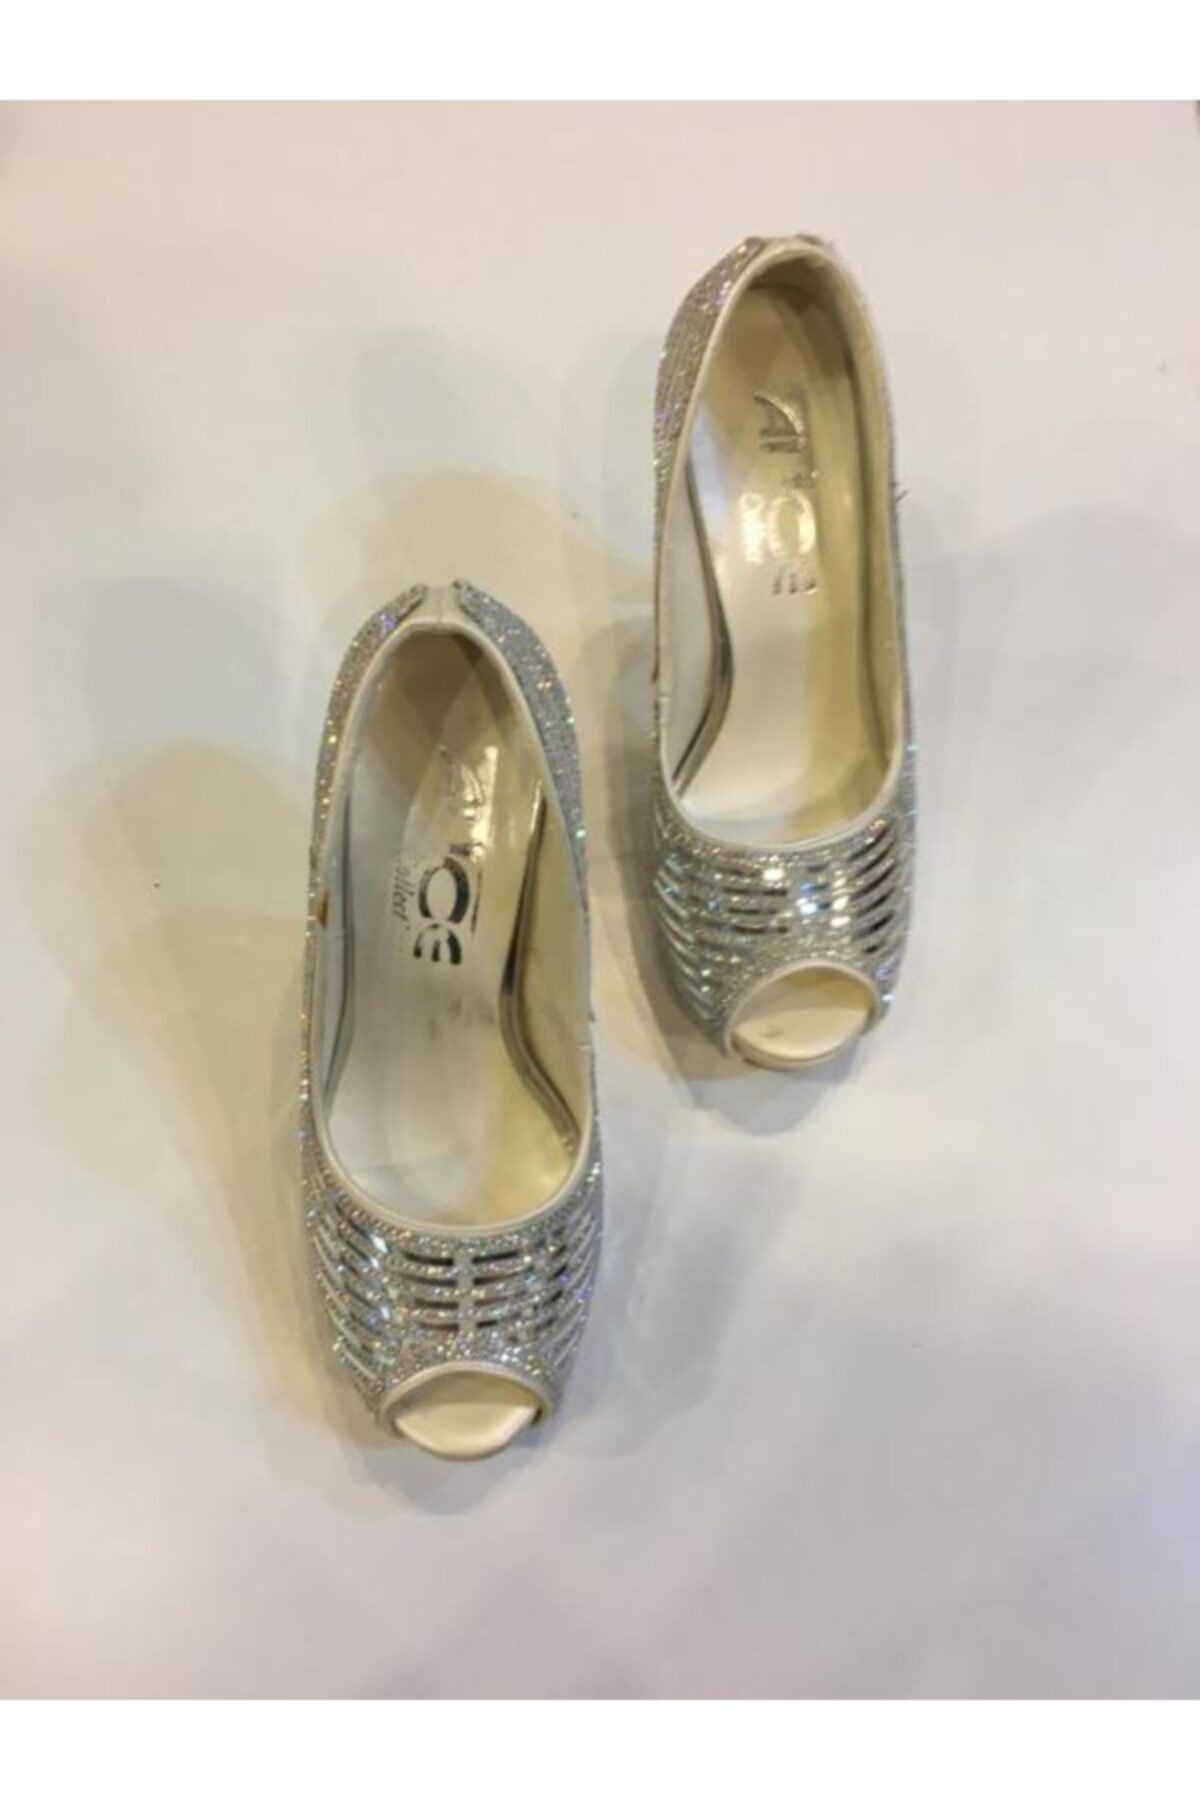 Alice Abiye Ayakkabı Gümüş Çok Taşlı Ince Topuklu Topuk Boyu 11 Cm